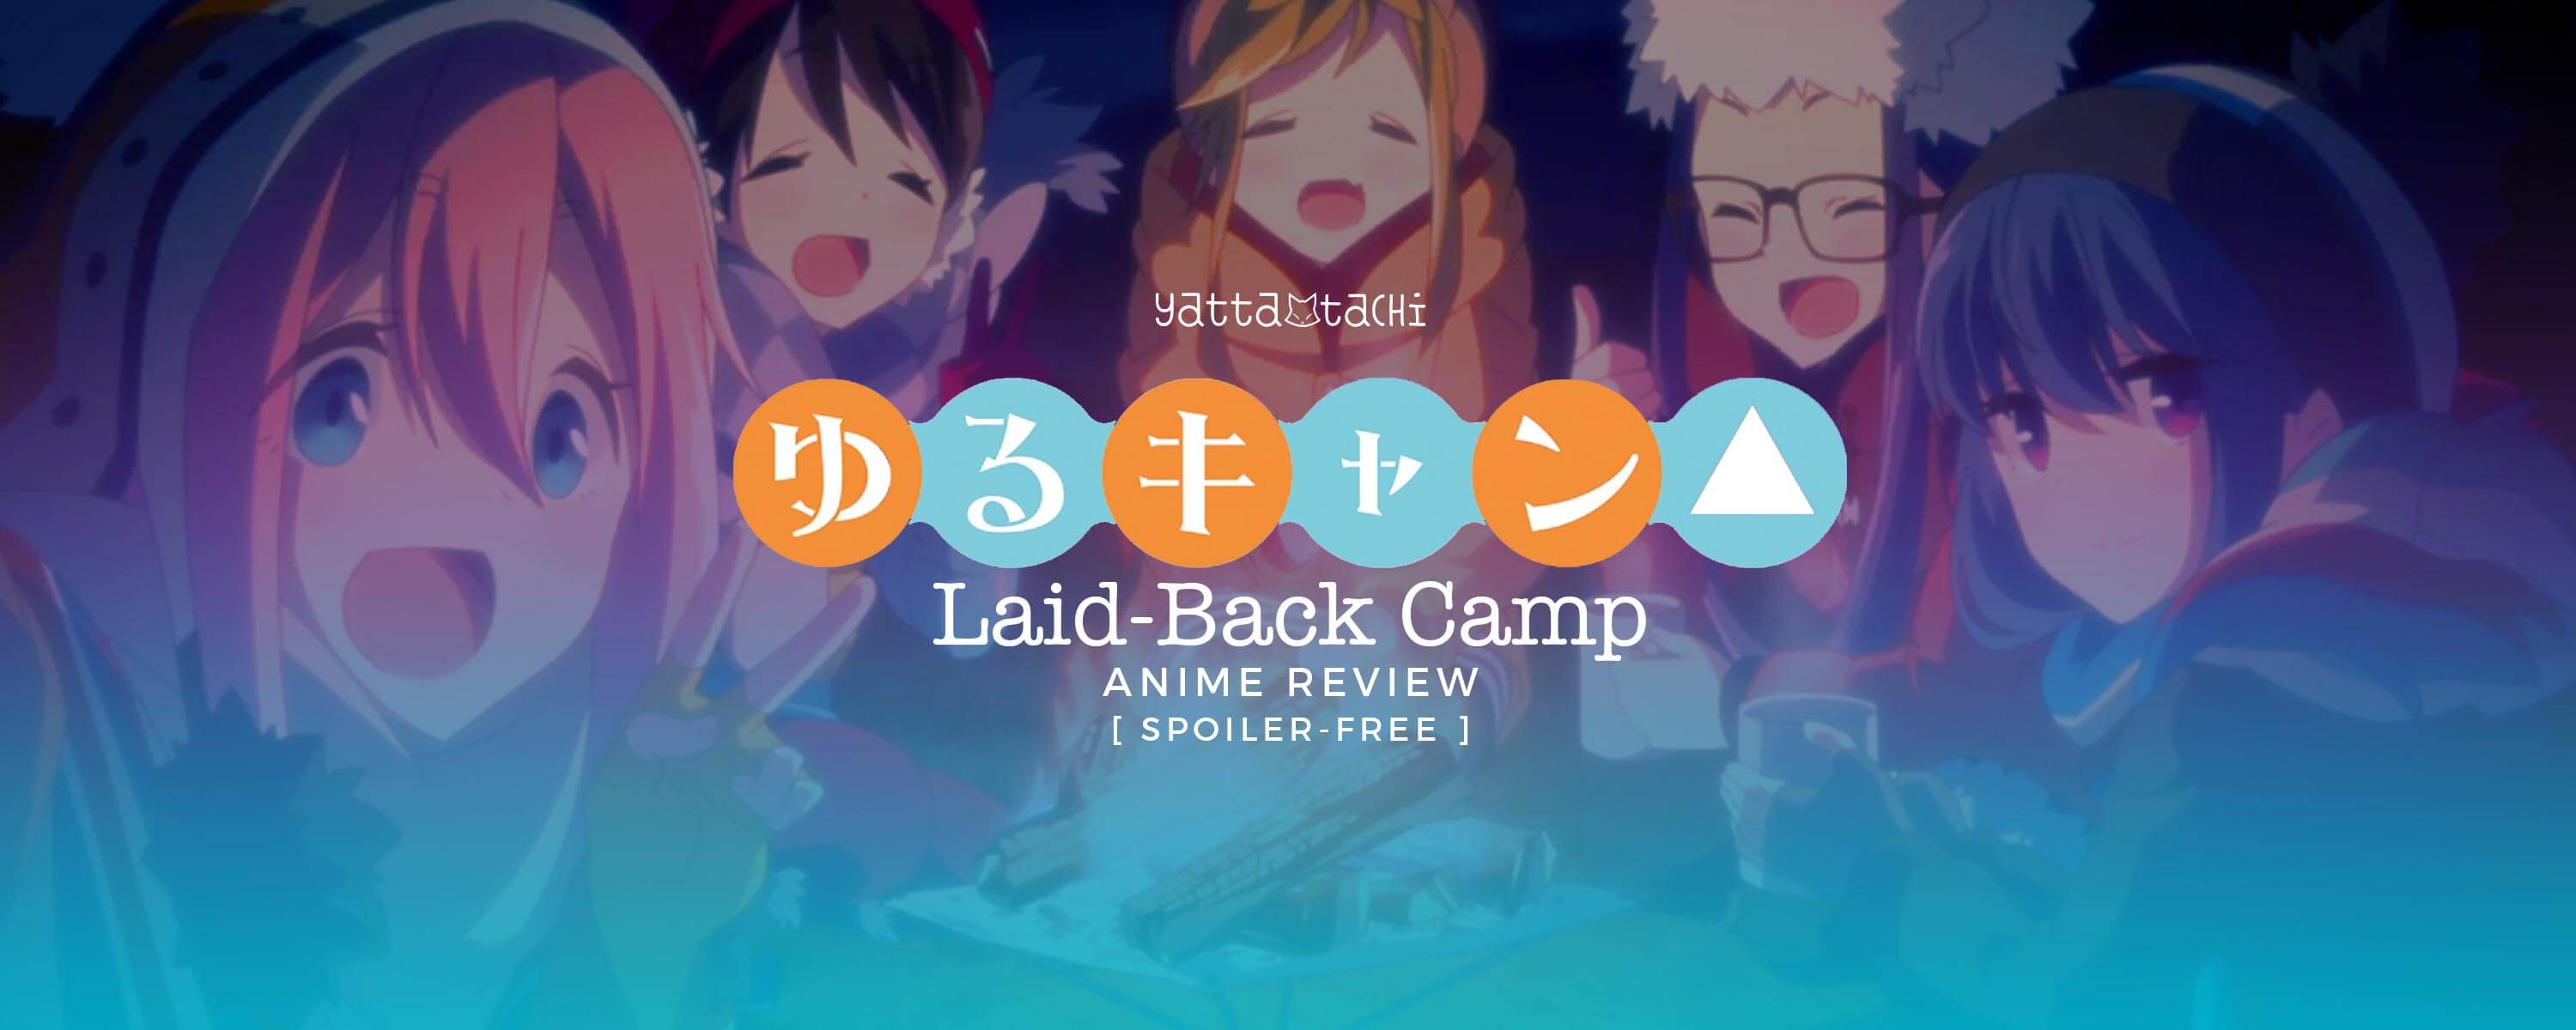 Yuru Camp - Rin Shima〛Anime Dakimakura | Shopee Malaysia